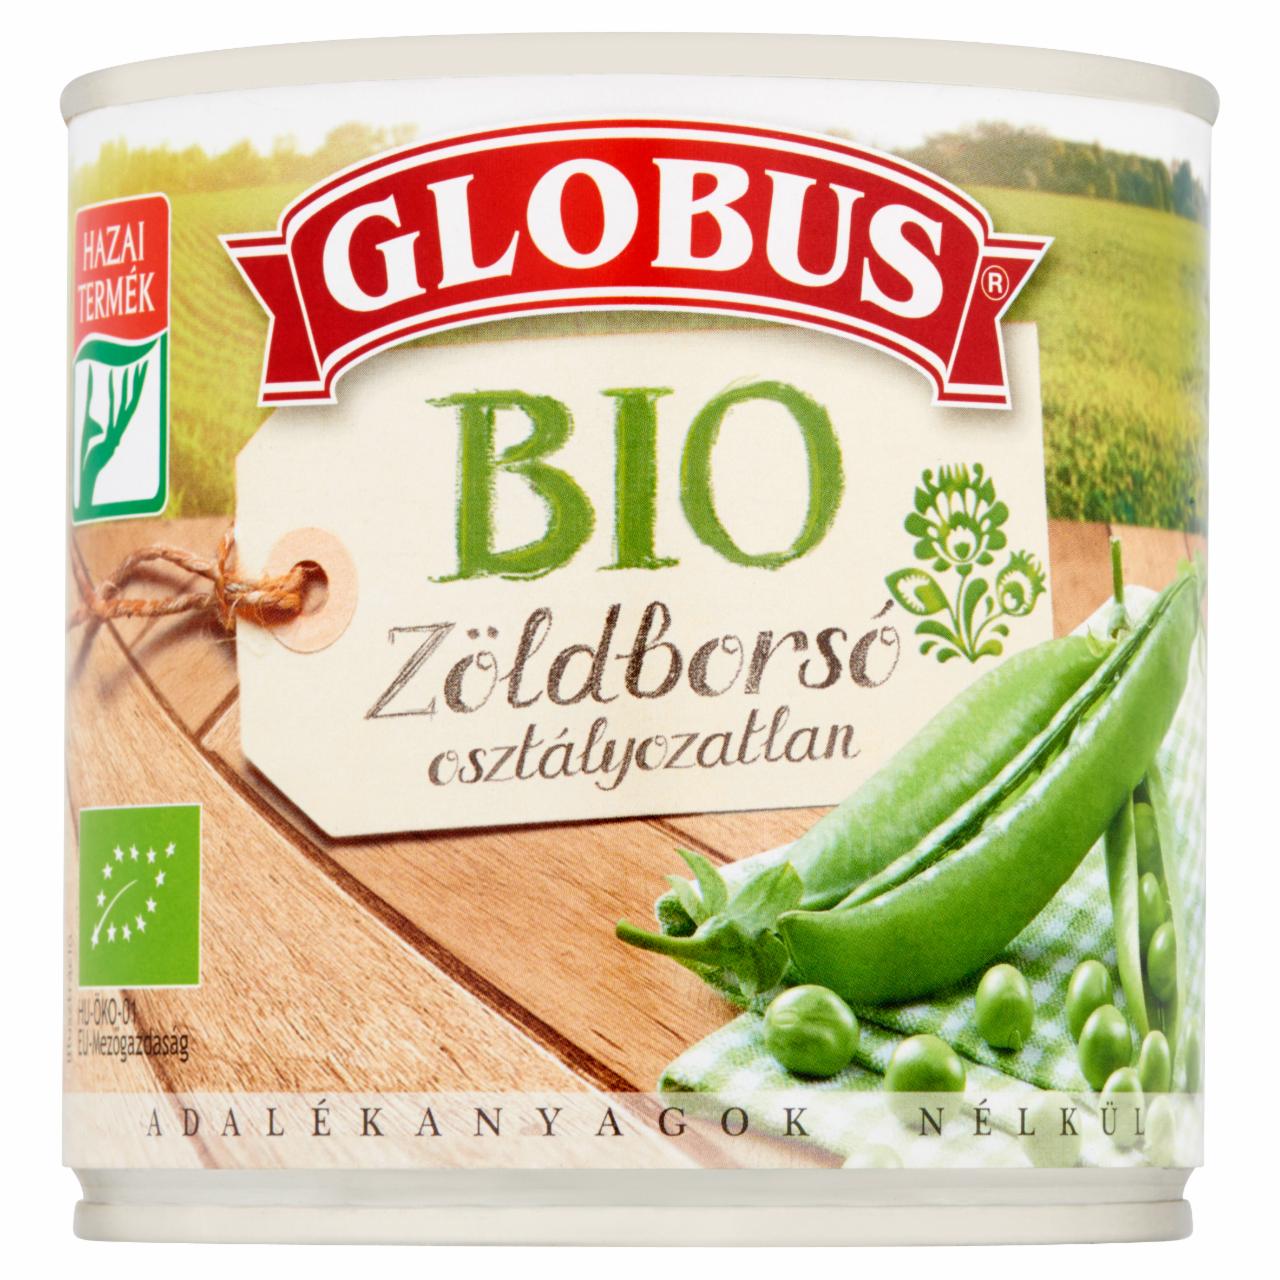 Képek - Globus BIO osztályozatlan zöldborsó 400 g